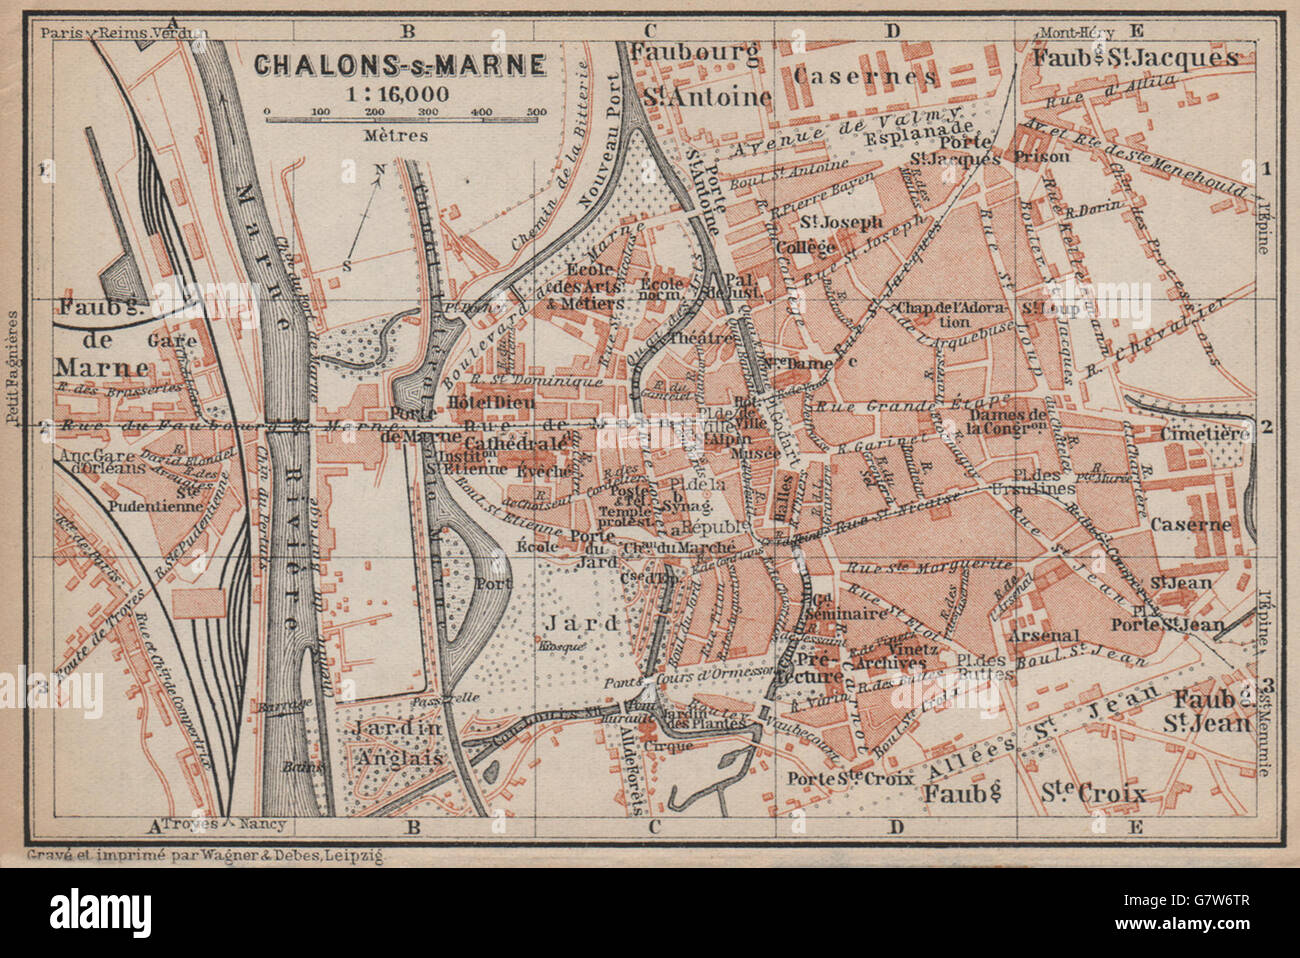 CHALONS-EN-CHAMPAGNE town city plan de la ville. Châlons-sur-Marne, 1905 map Stock Photo